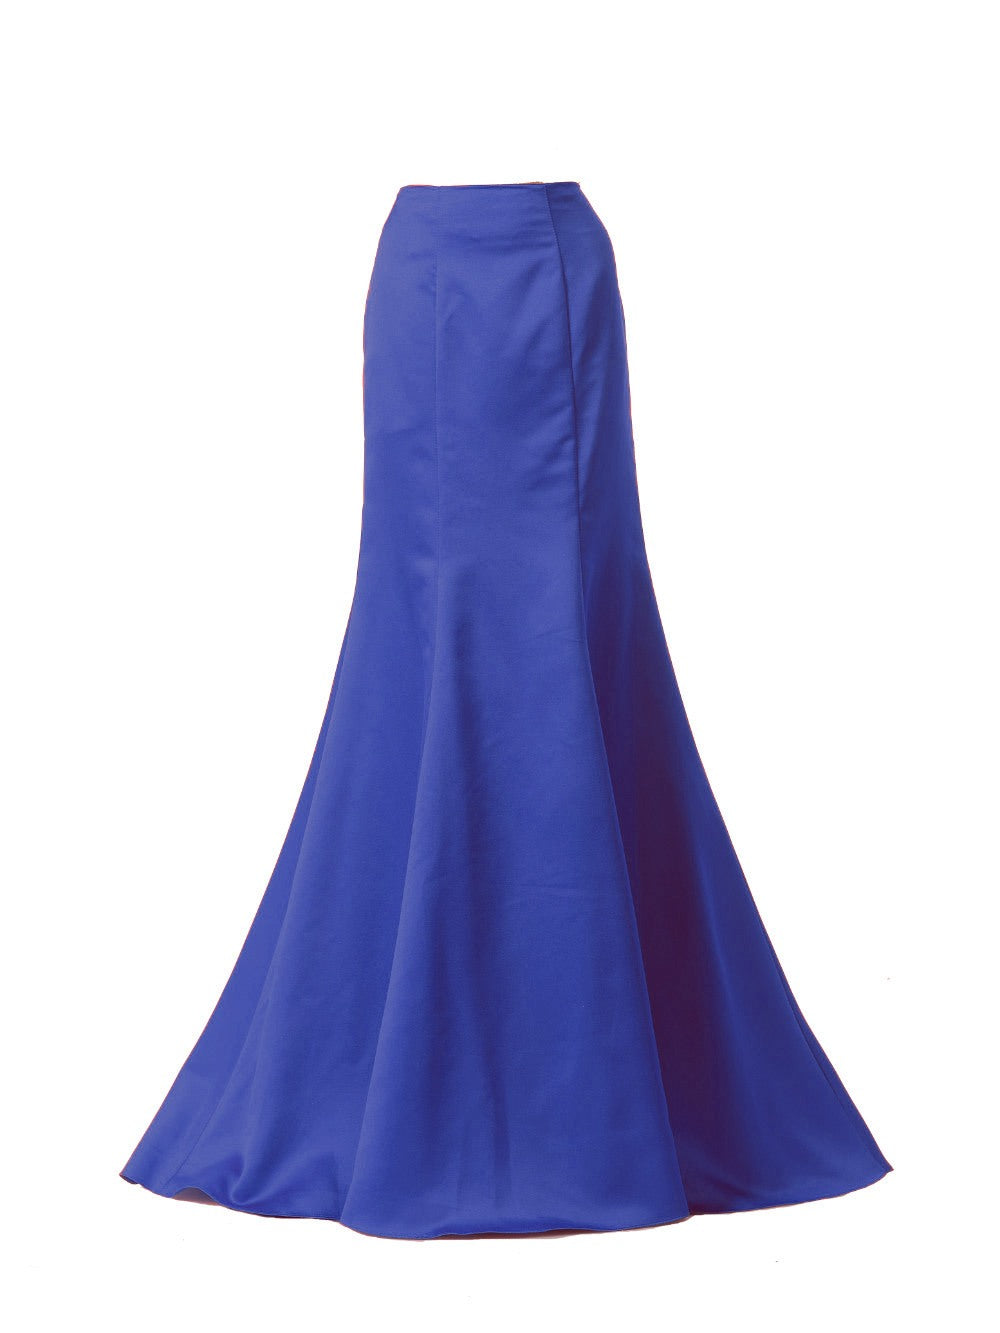 Poly USA SK18 - Royal Blue Mermaid Skirt Satin Ruffled Back 